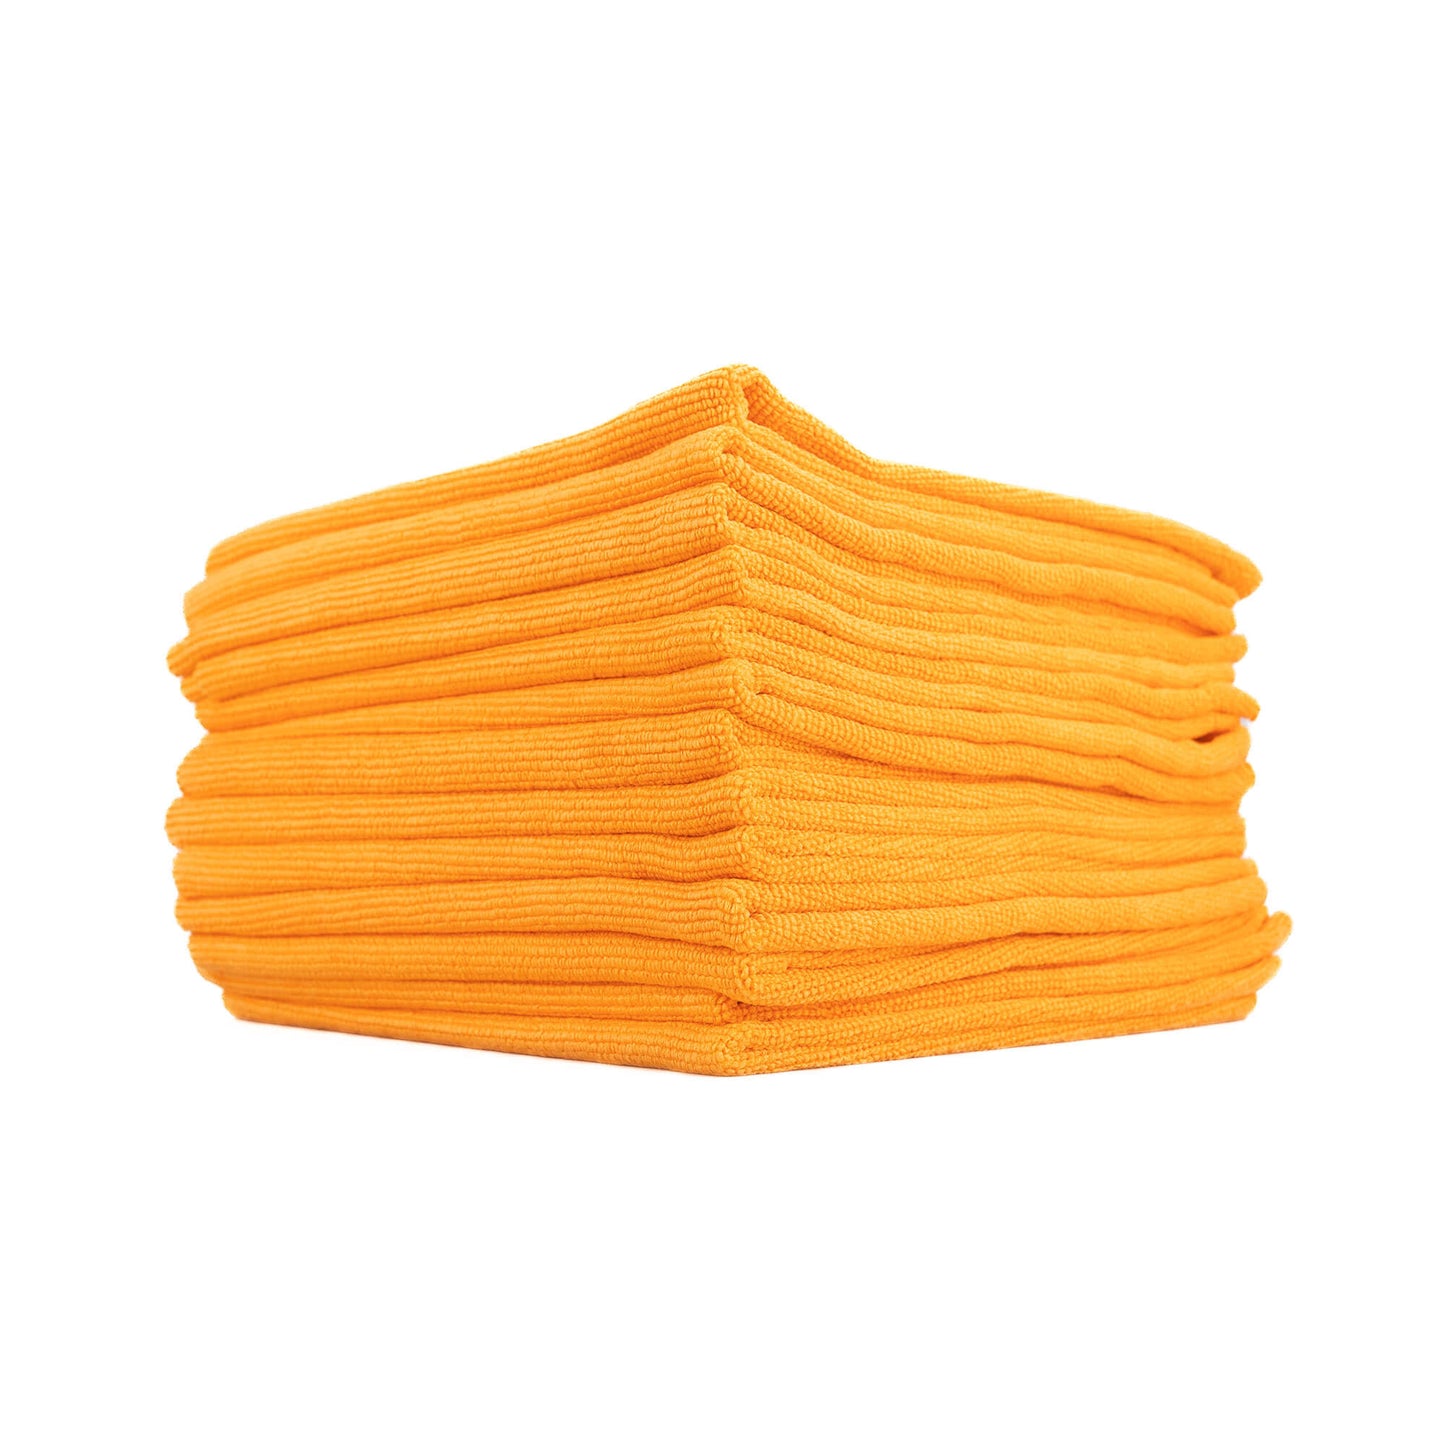 THE Edgeless PEARL Microfiber Ceramic Coating Towel - 12 Pack